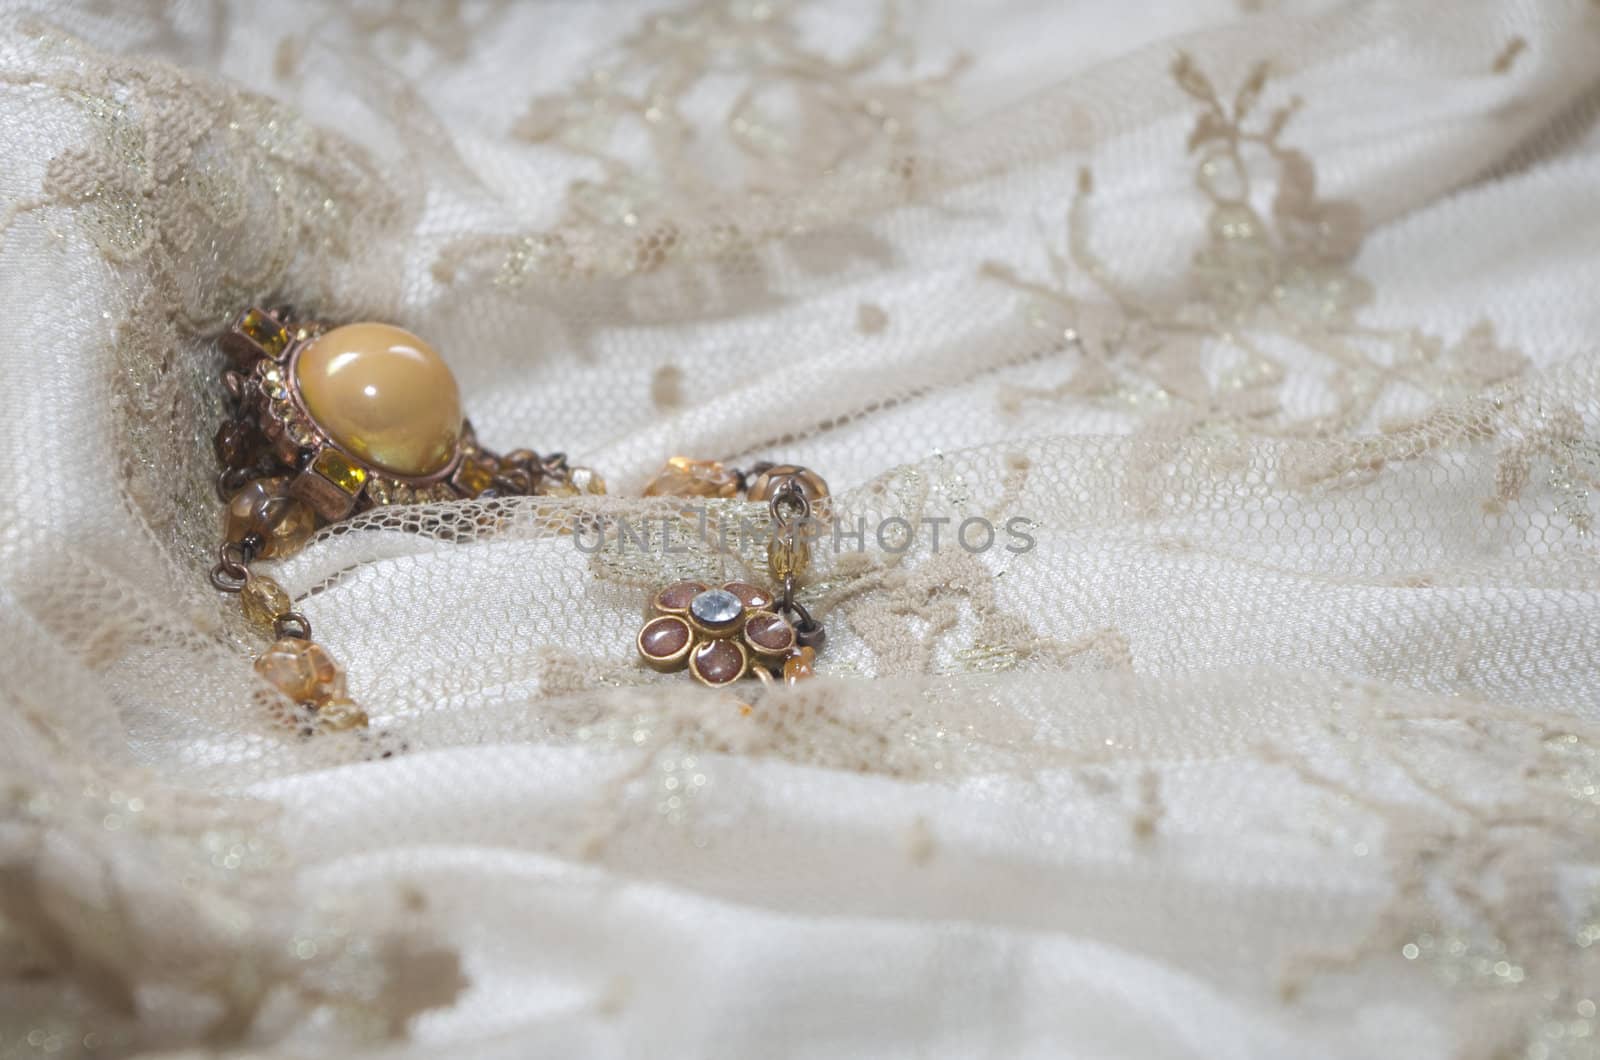 Bracelet on lace by Silvia